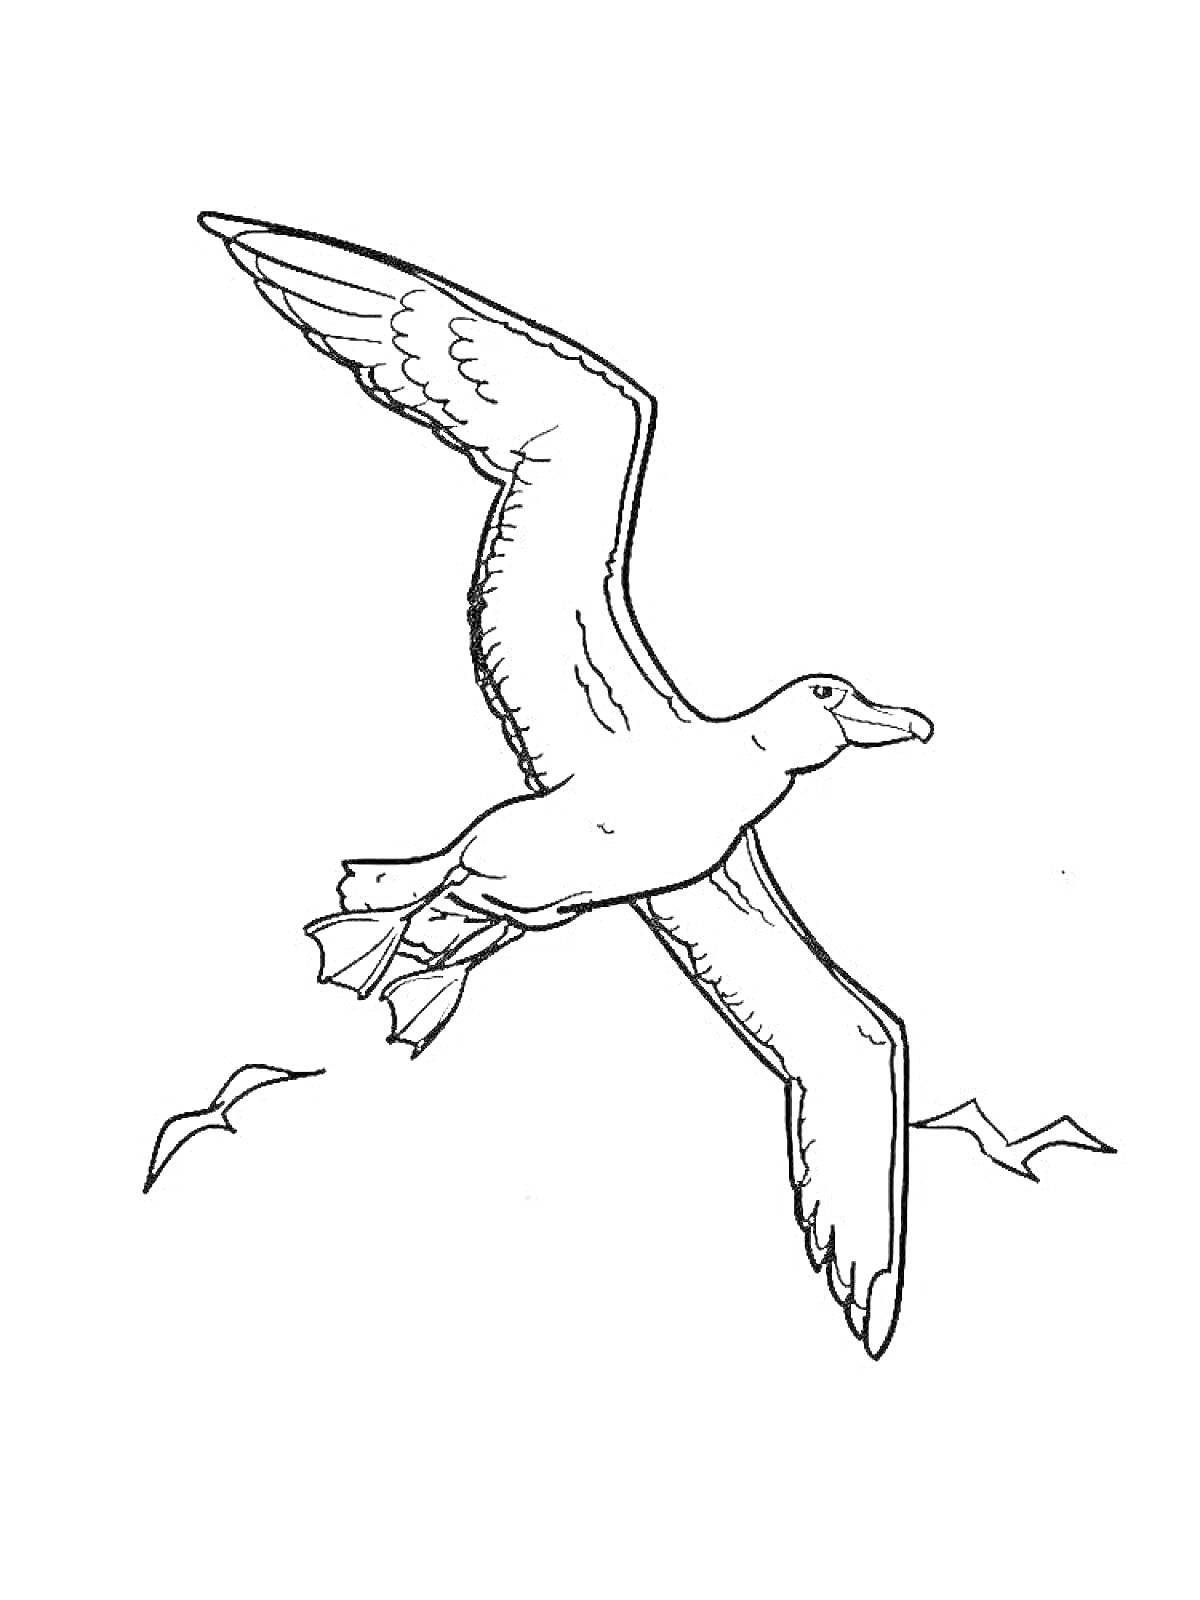 Раскраска Летящий альбатрос с рисунком маленьких птиц на заднем плане и одной птицей на переднем плане